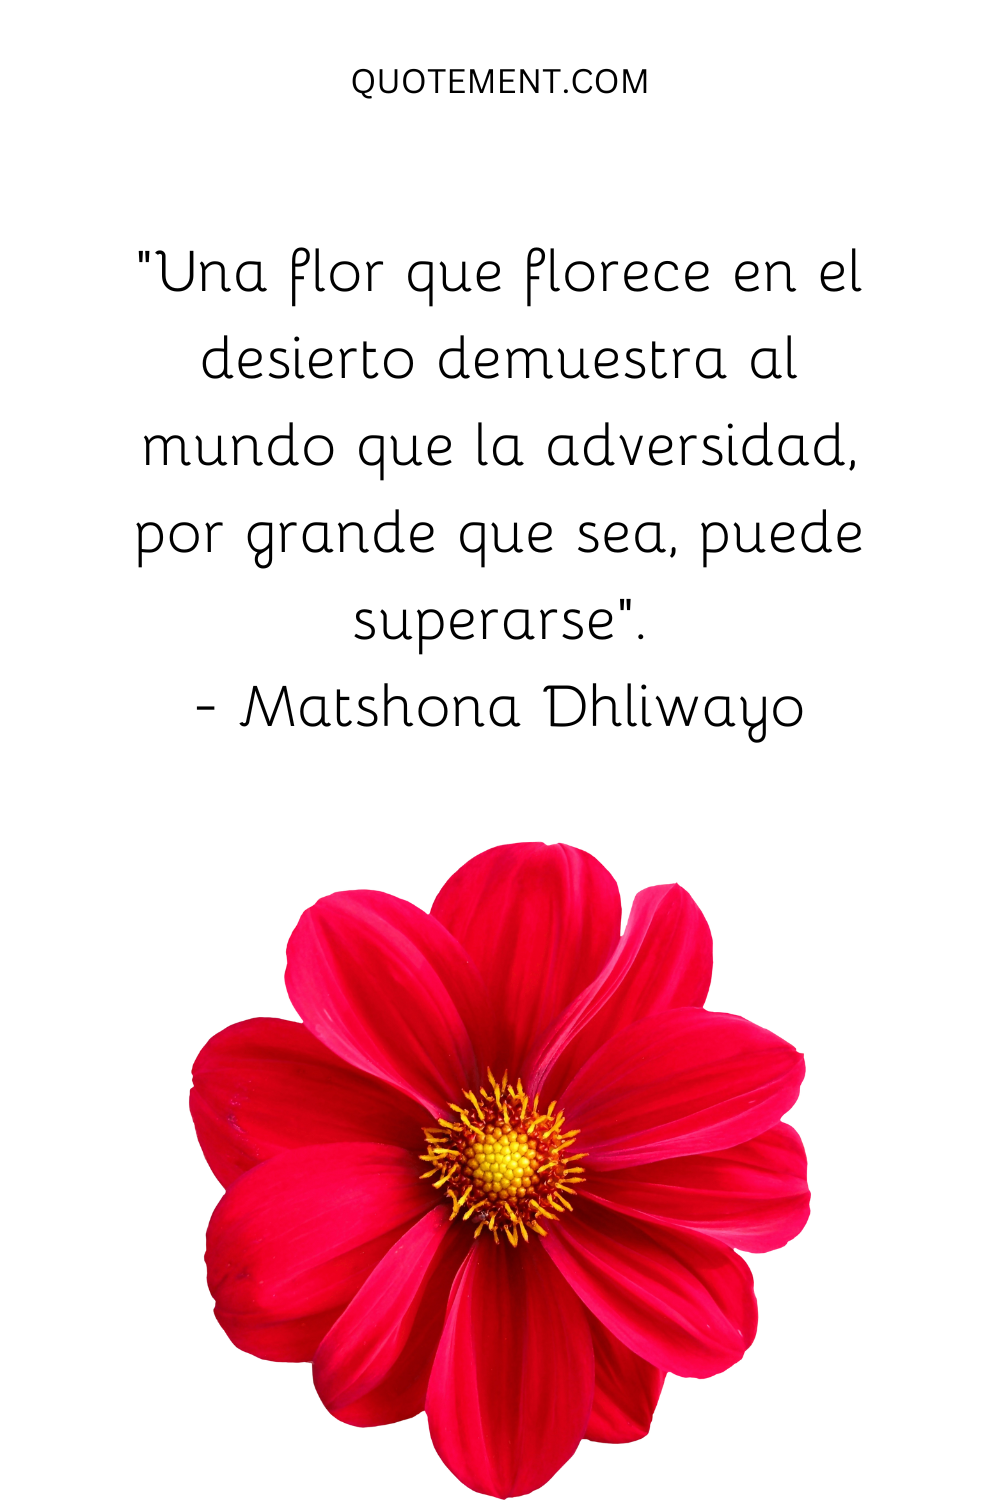 "Una flor que florece en el desierto demuestra al mundo que la adversidad, por grande que sea, puede superarse". - Matshona Dhliwayo